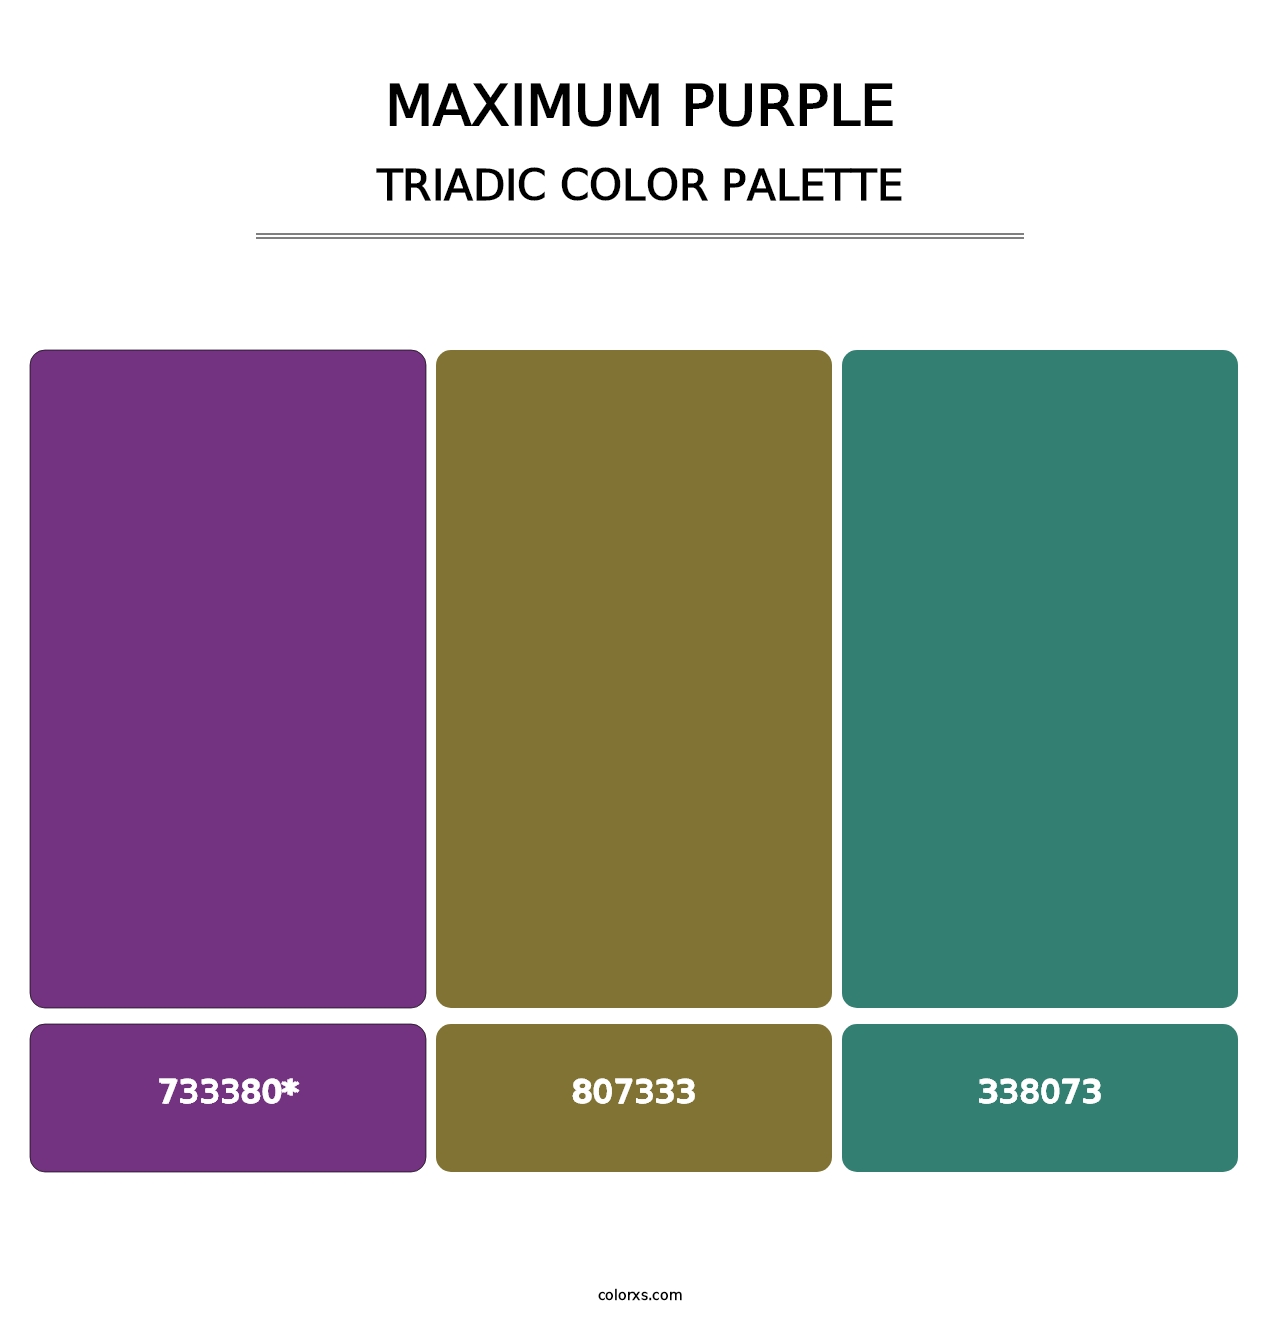 Maximum Purple - Triadic Color Palette